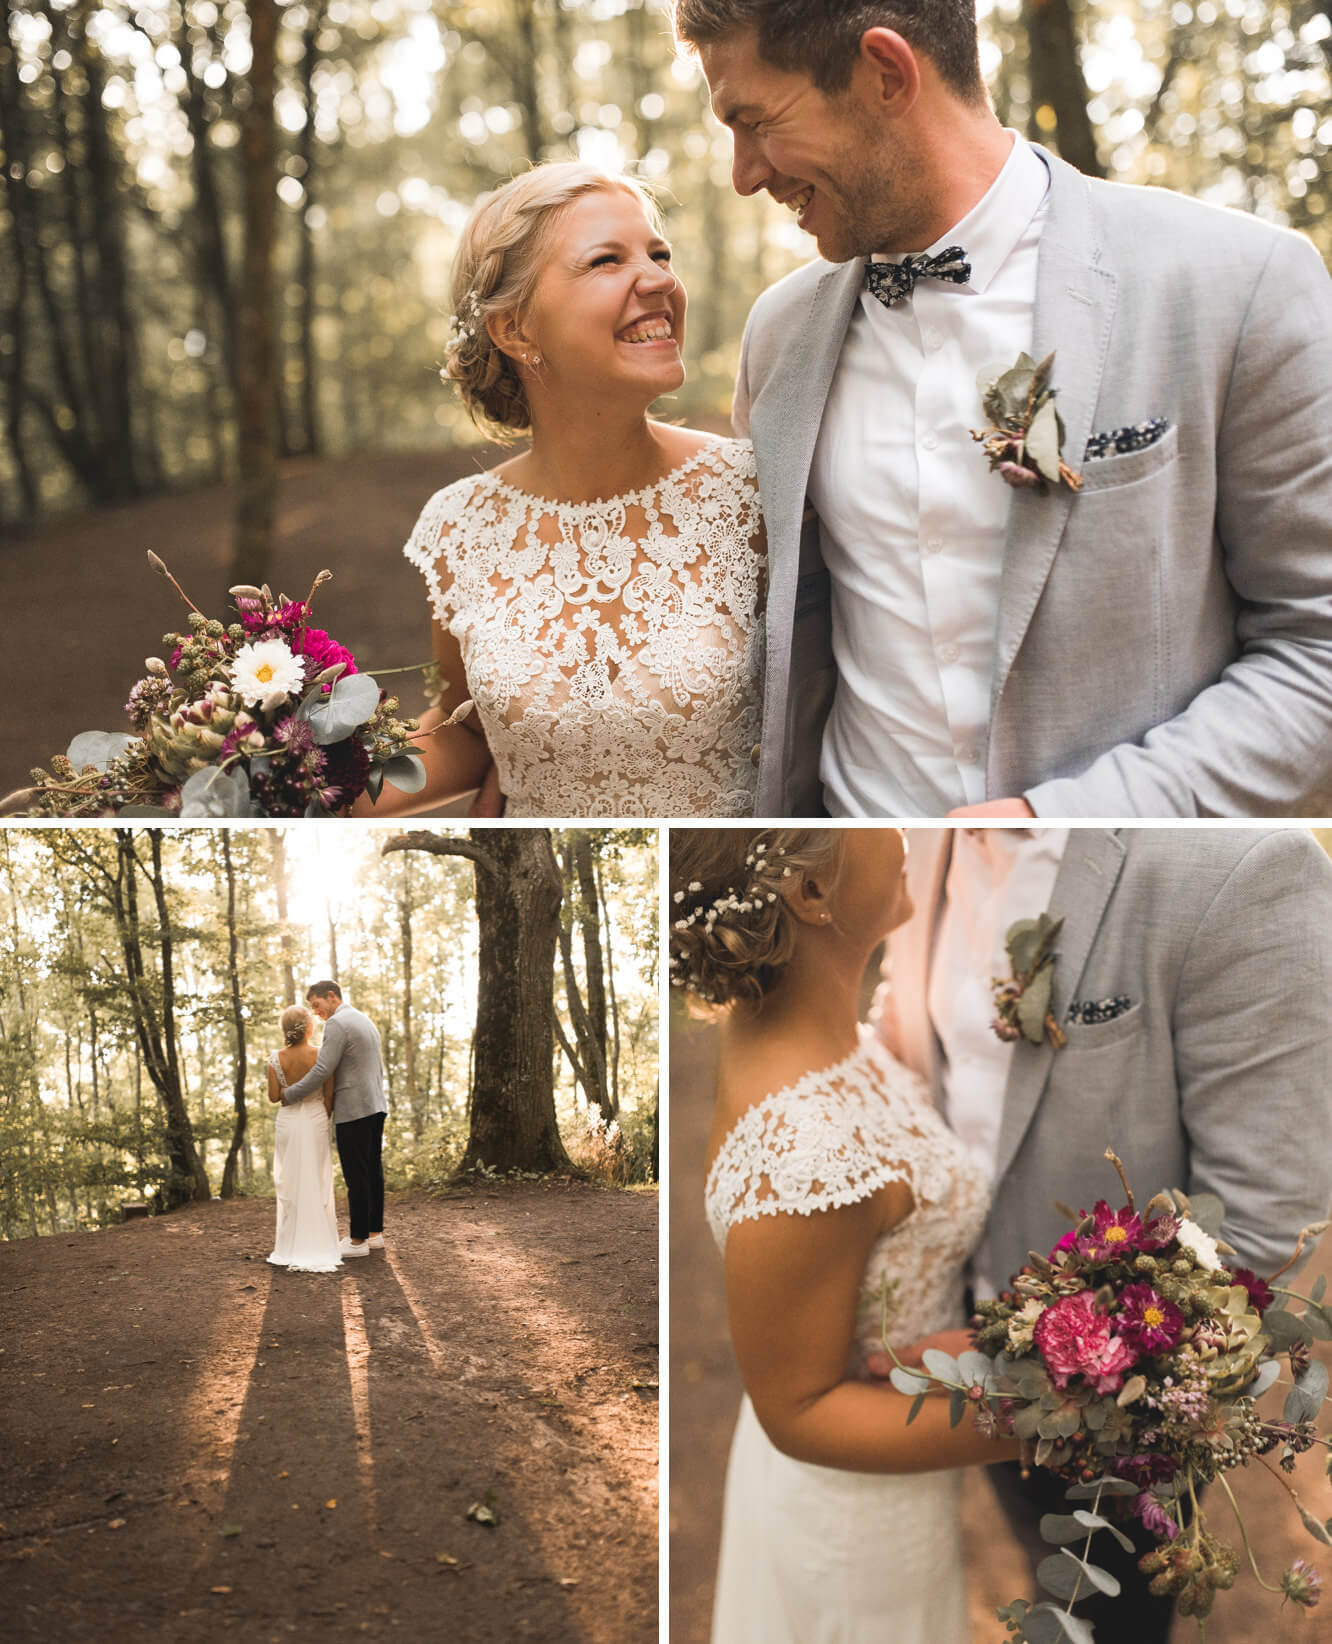 Brautpaarshoot bei Hochzeit auf dem Einkorn im Wald mit Sonne vor Ruine mit Blumen von der Straussbinderei Starz